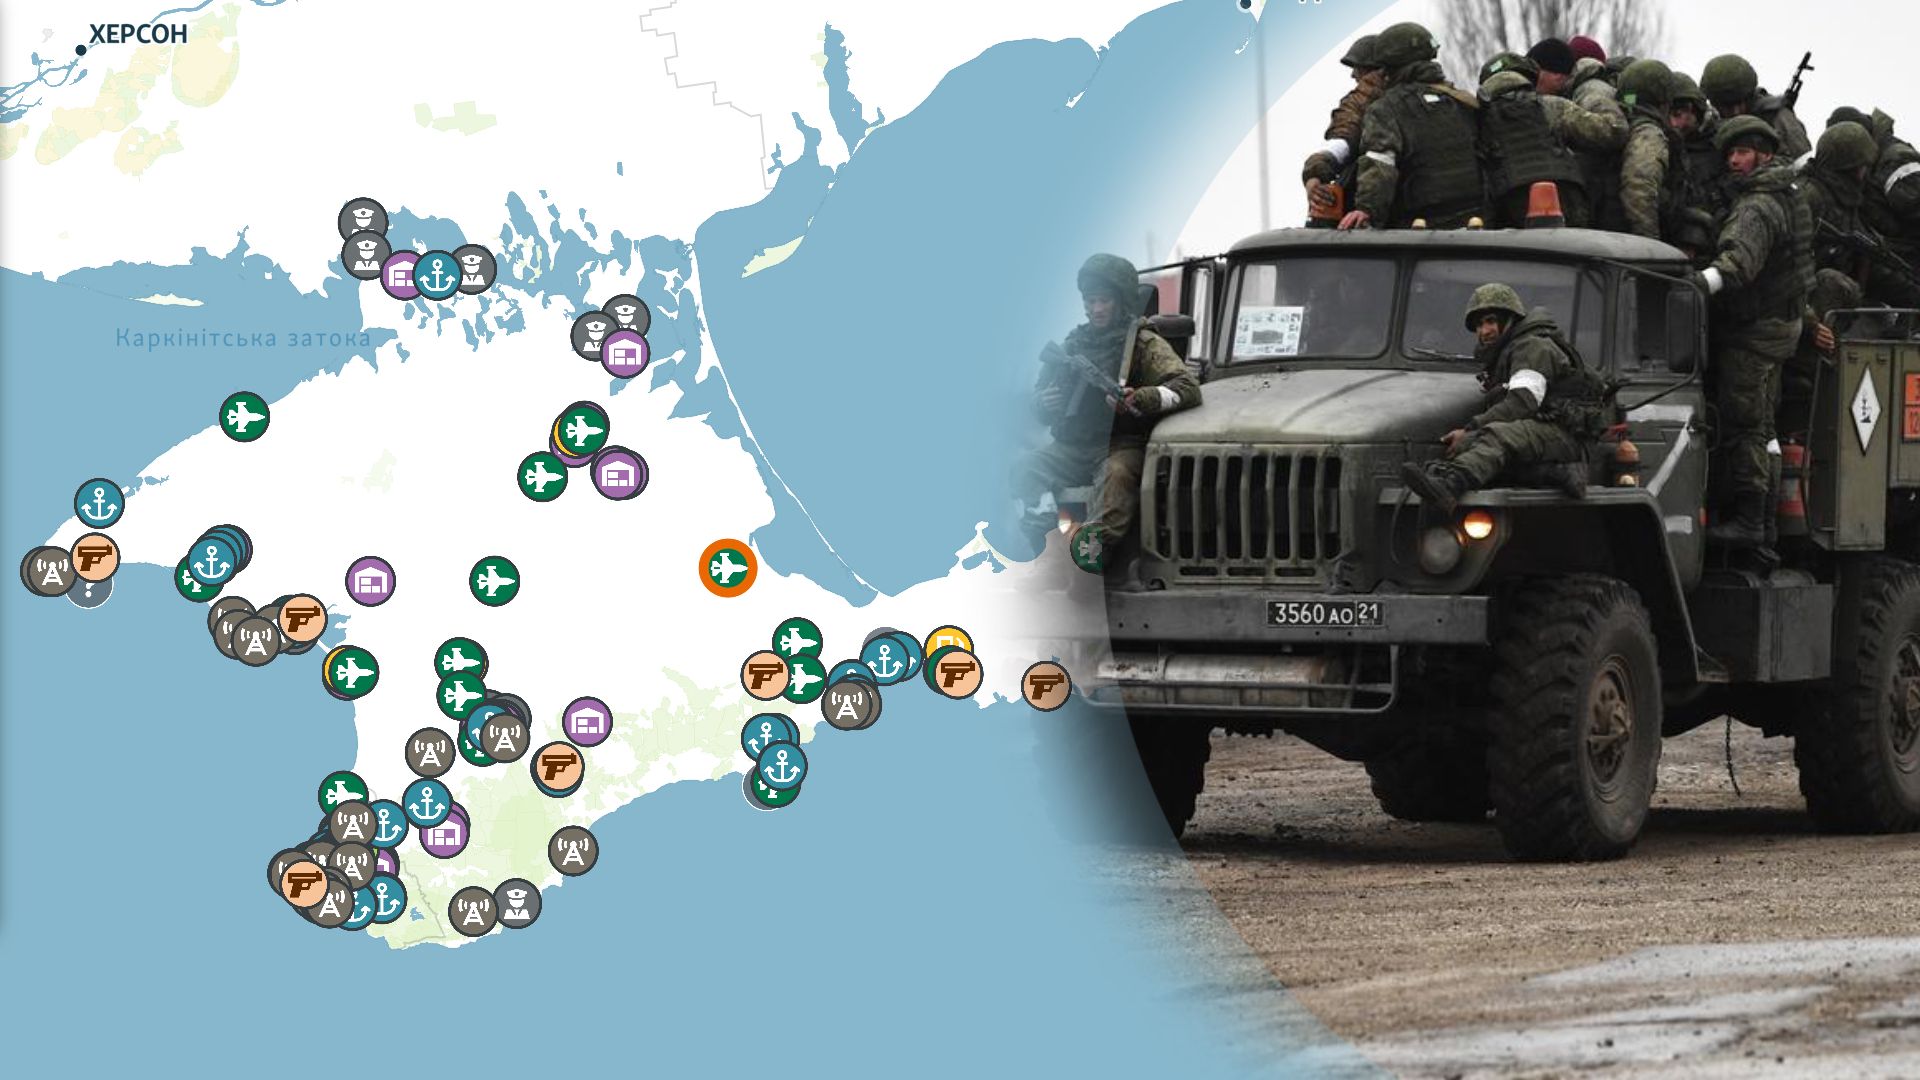 В Крыму россияне разместили более 200 военных объектов